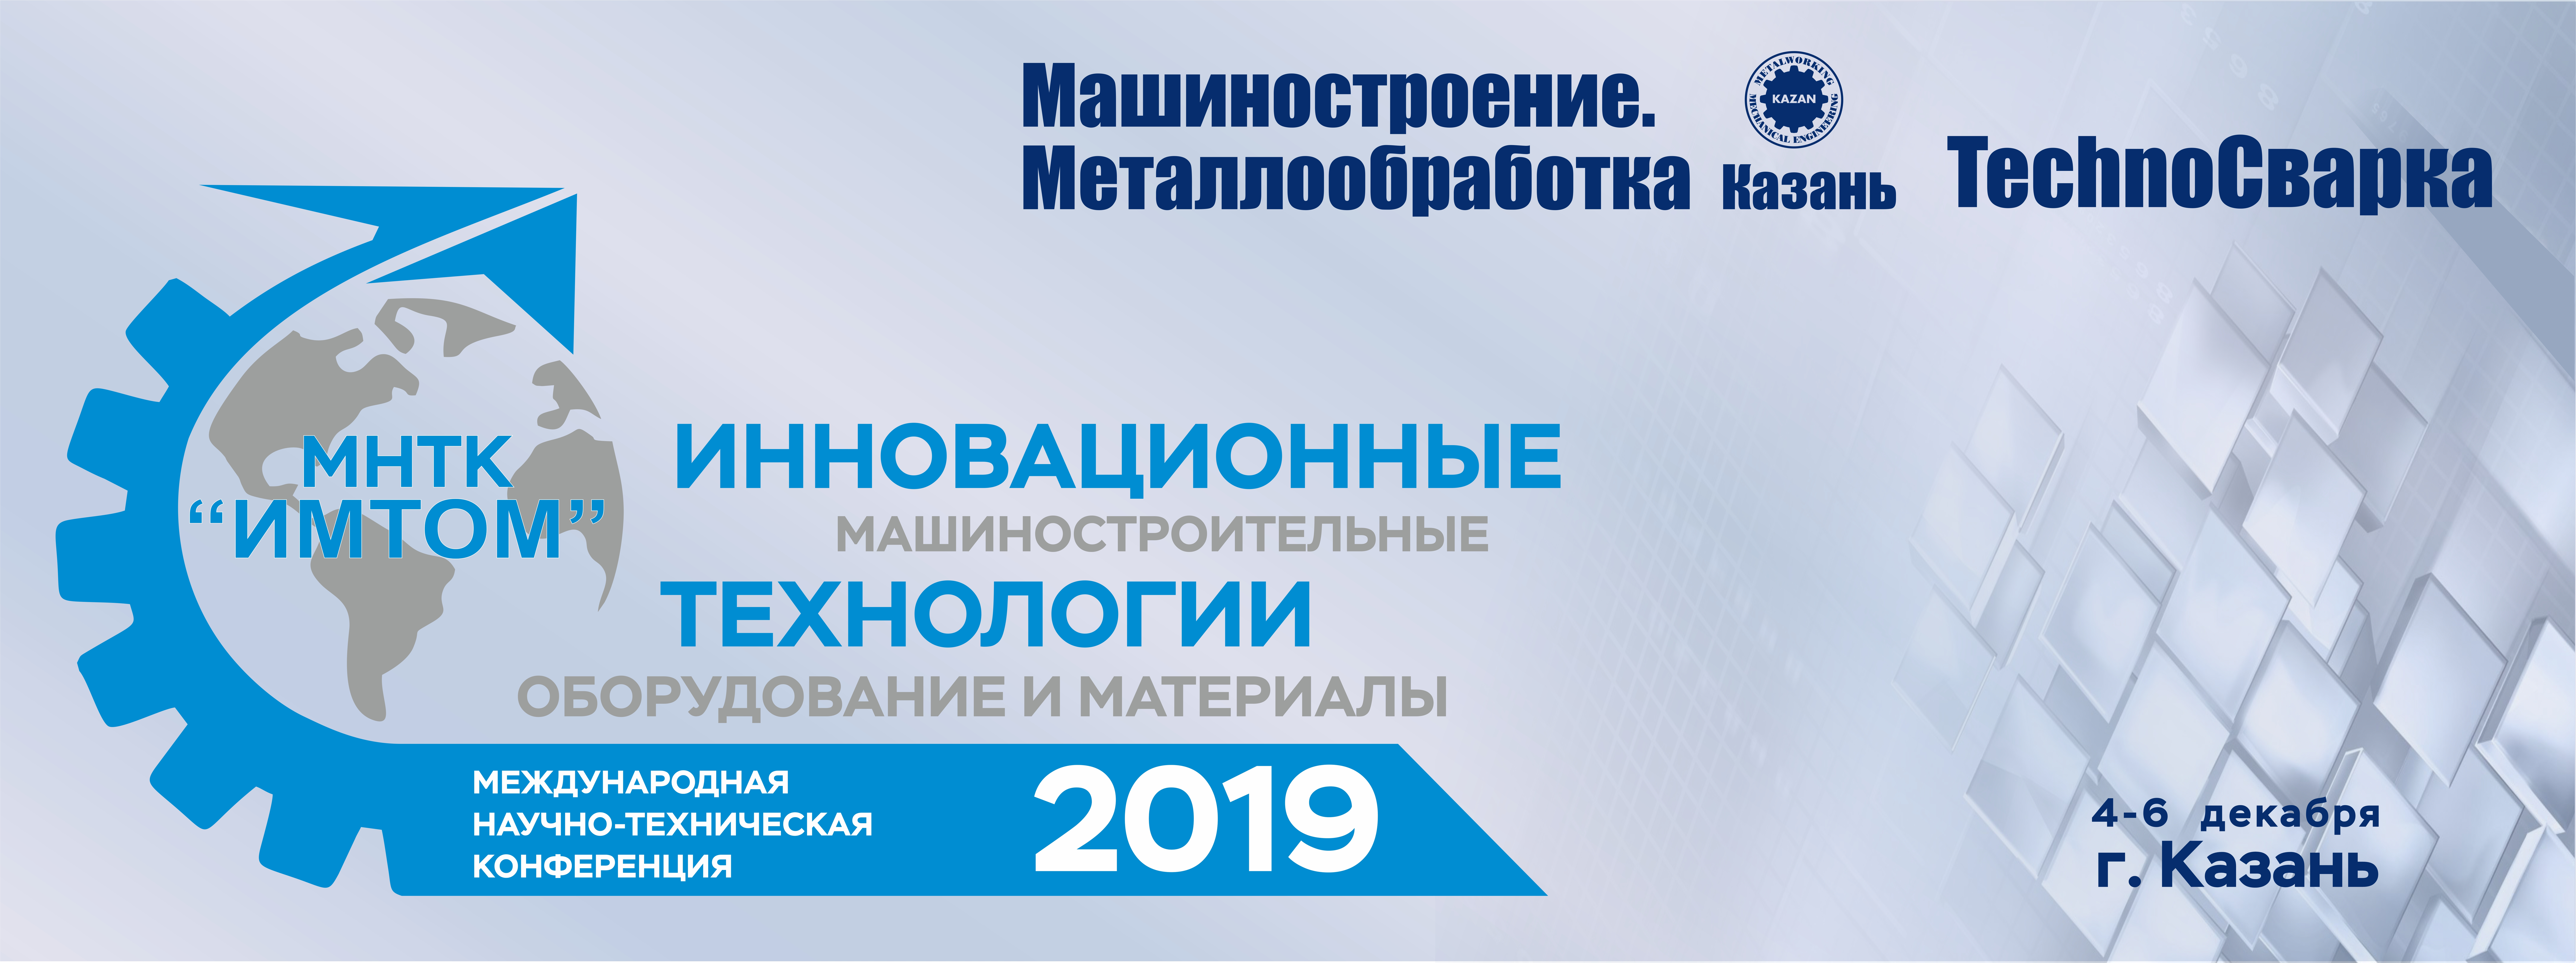 Приглашение на конференцию МНТК "ИМТОМ-2019"